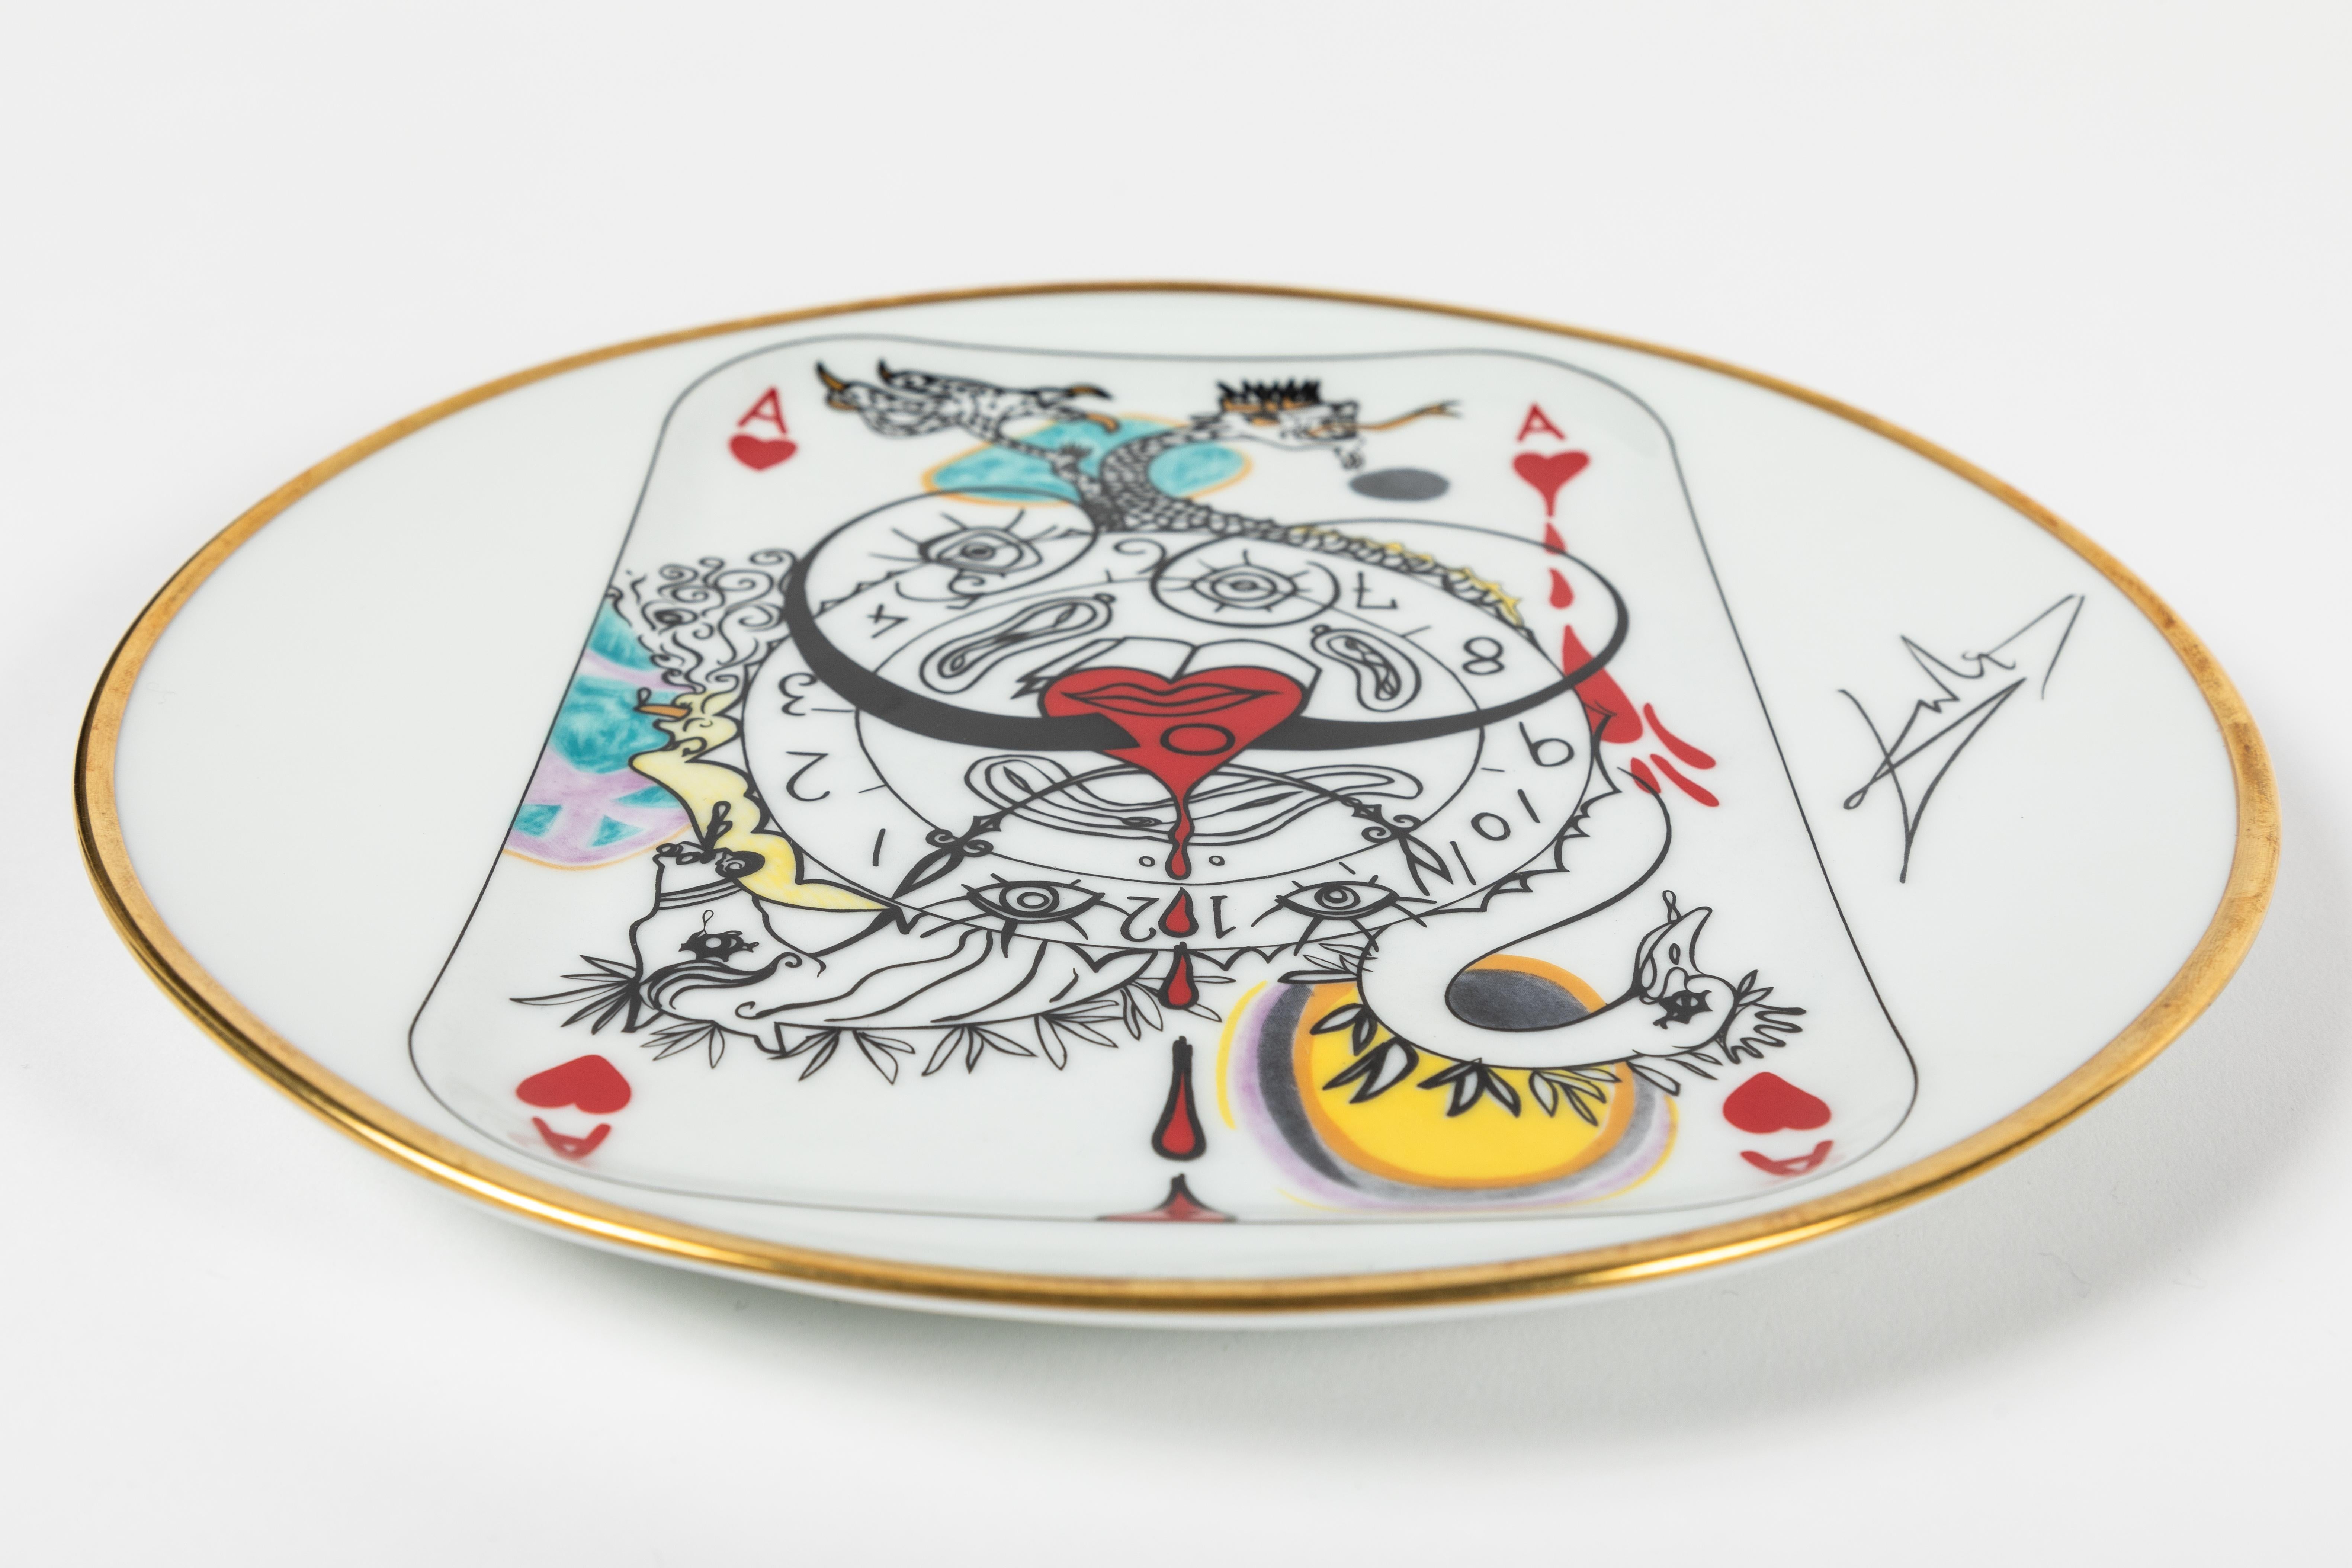 Set of “Carte a jouer” Plates designed by Salvador Dali for Puiforcat 1